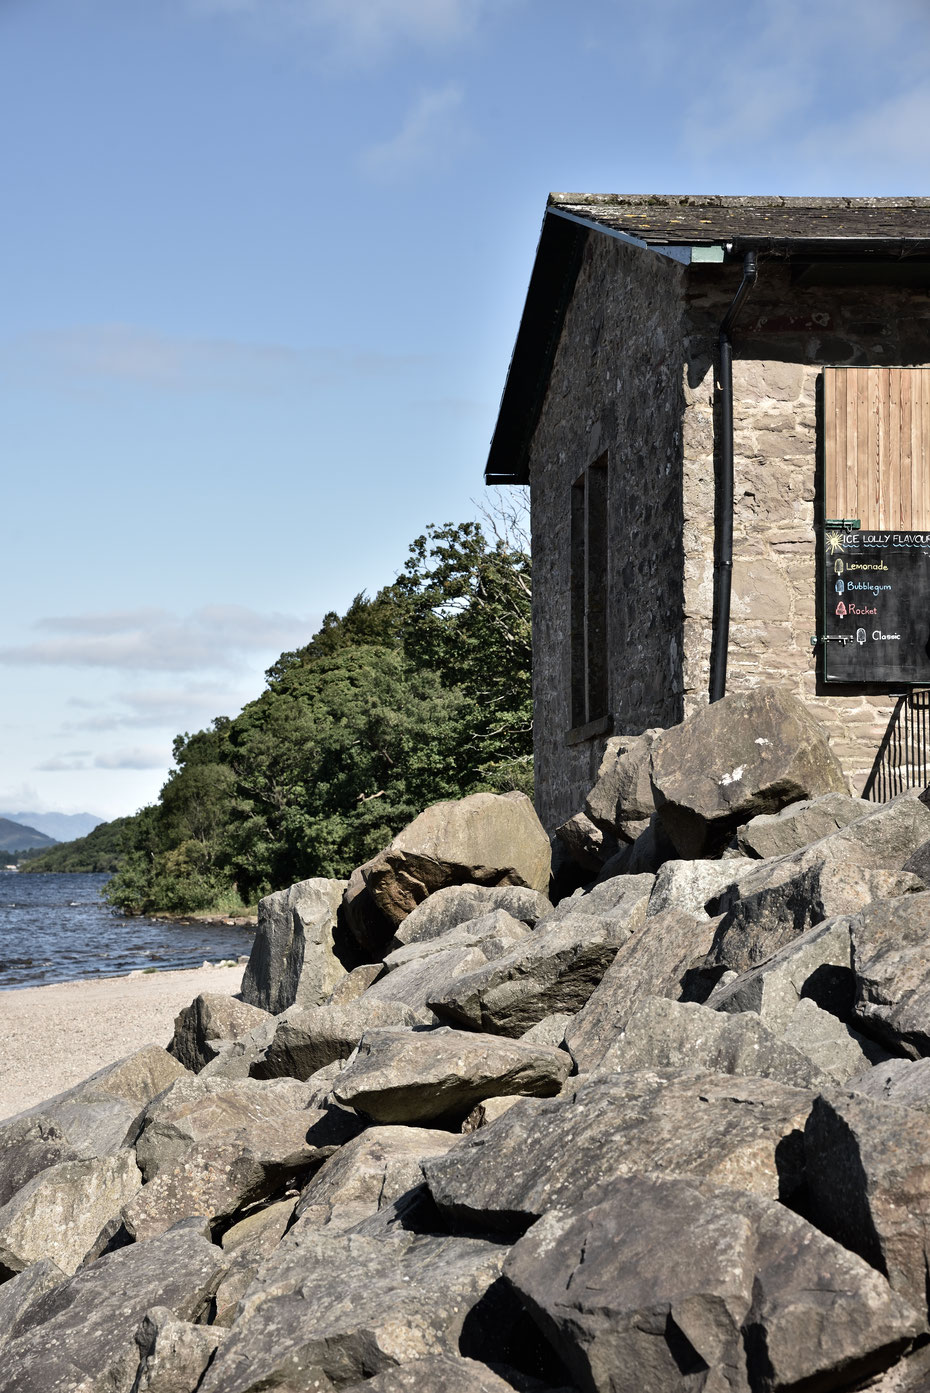 Sicher einer der schönsten Plätze (in Schottland) für ein Café! Direkt am Ufer des Loch Lomond. 